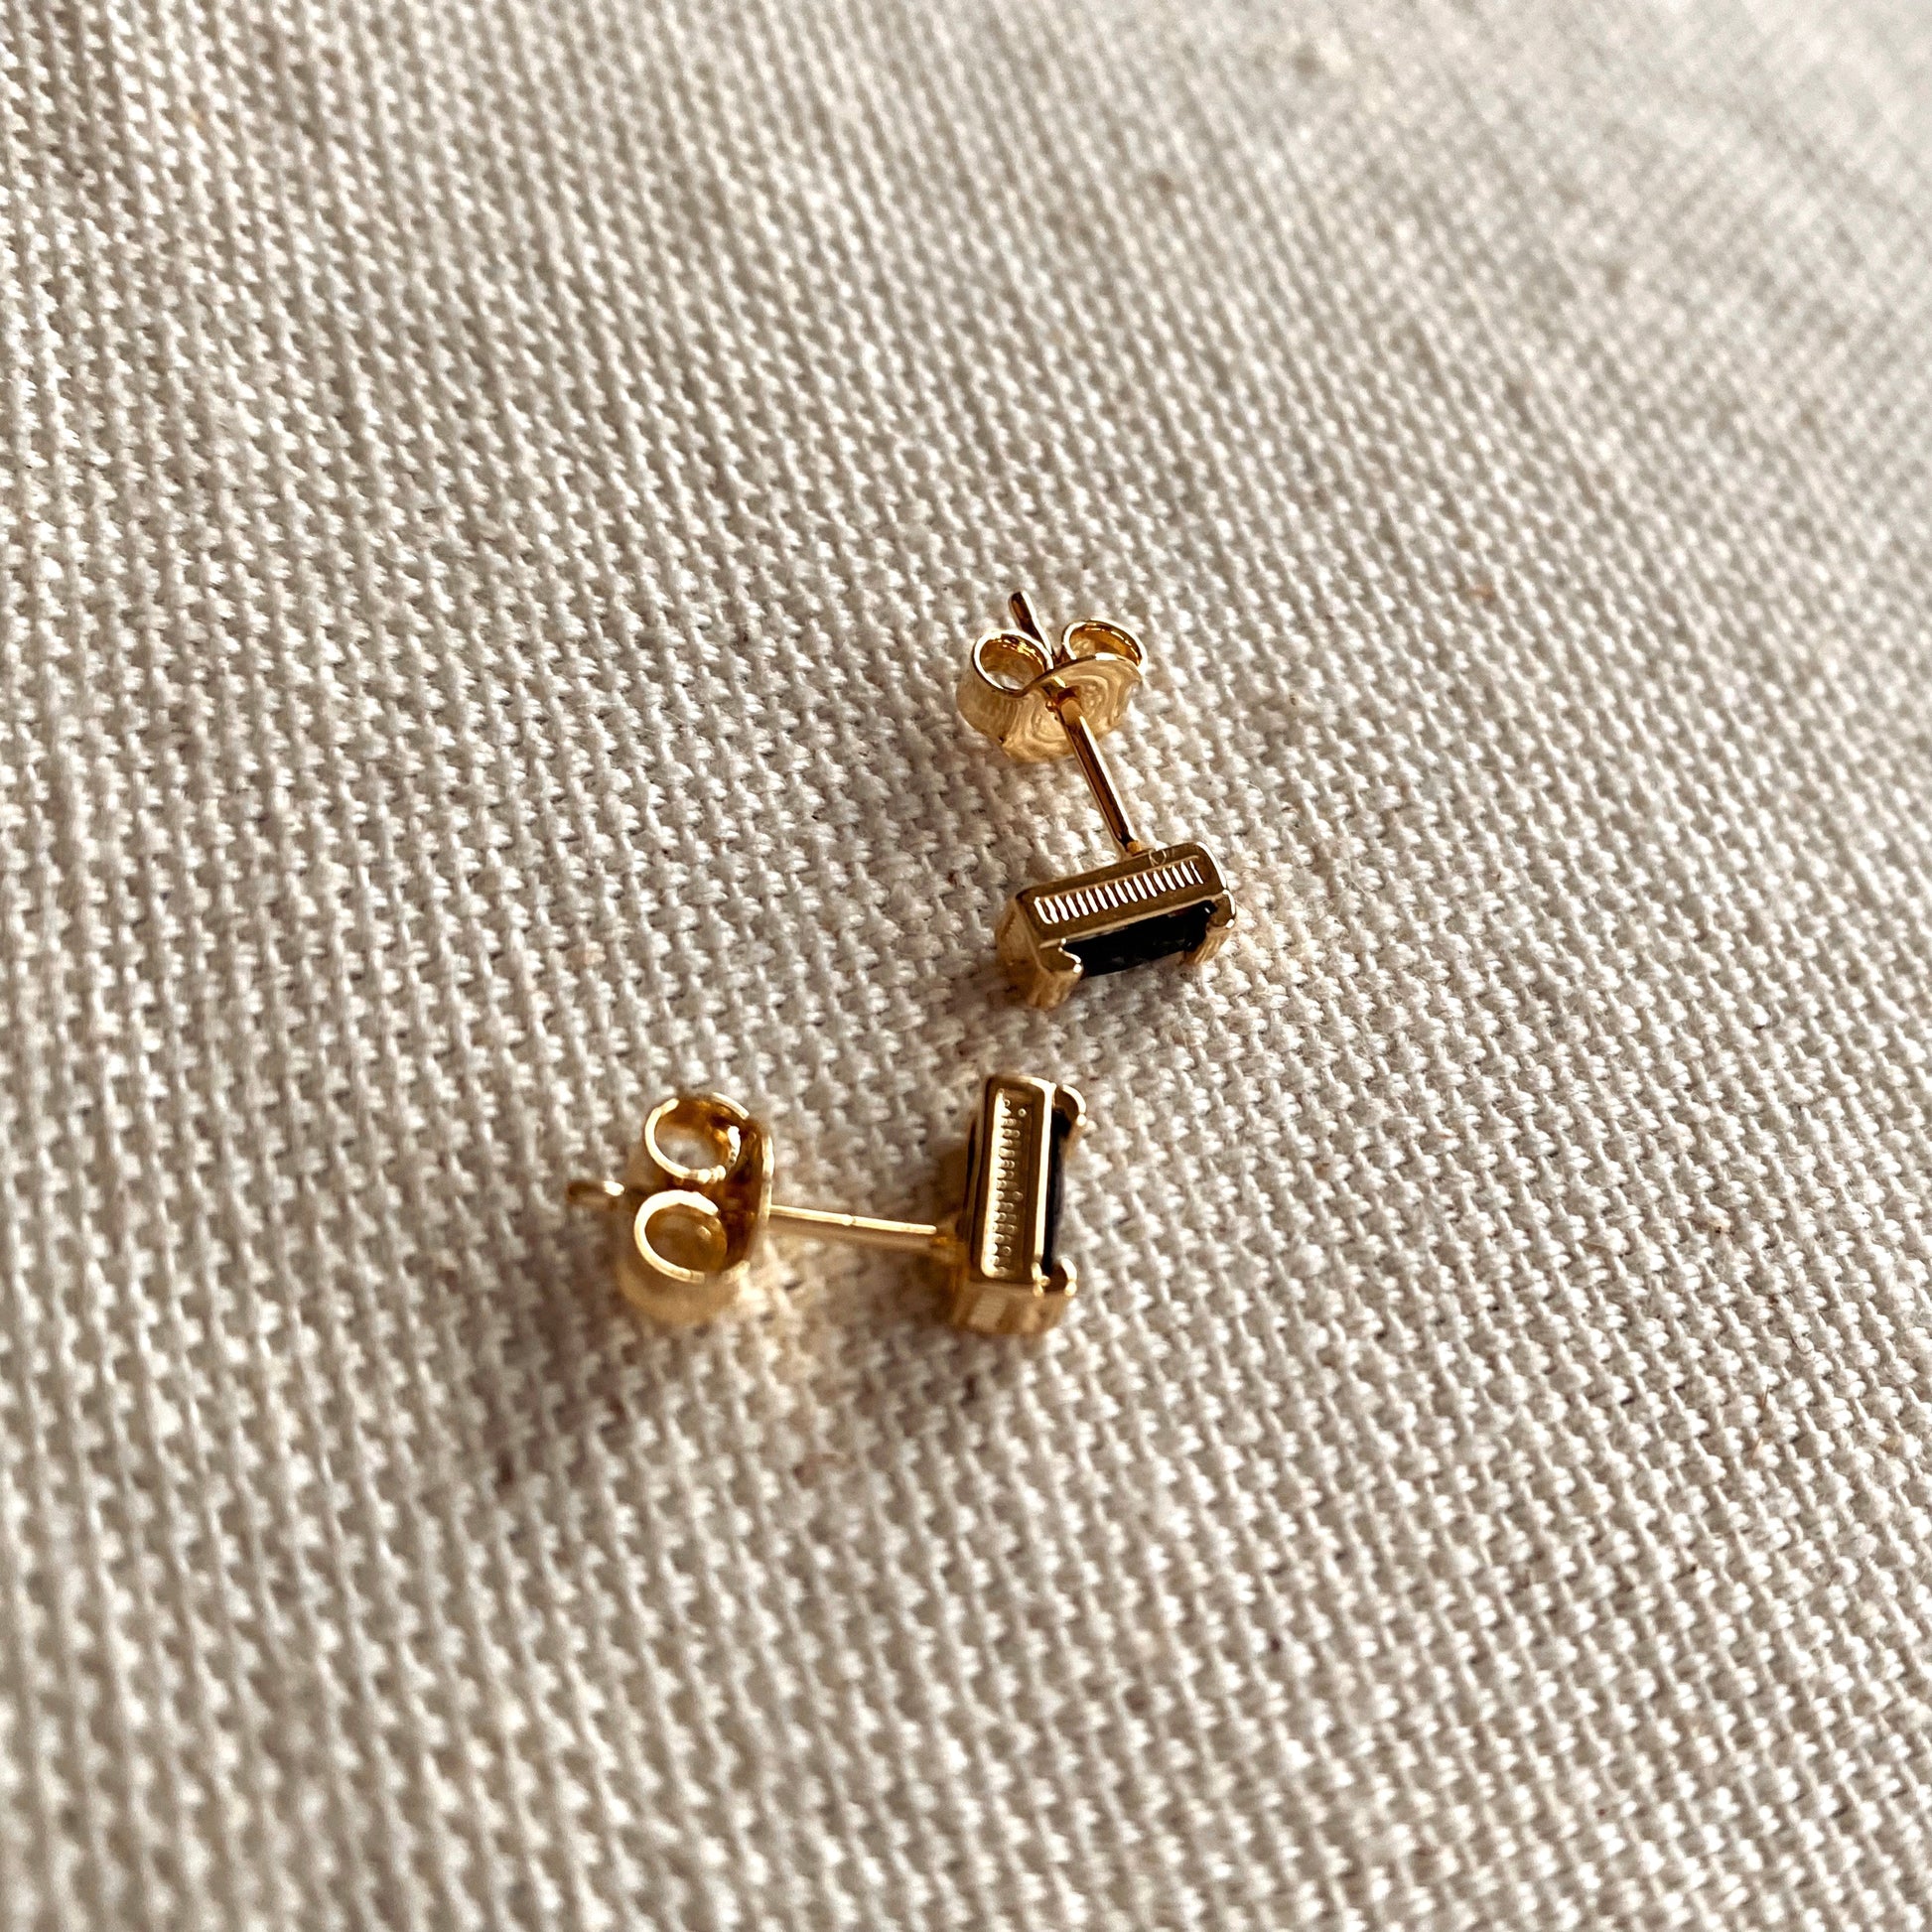 GoldFi Black Cubic Zirconia Baguette Stud Earrings In 18k Gold Filled